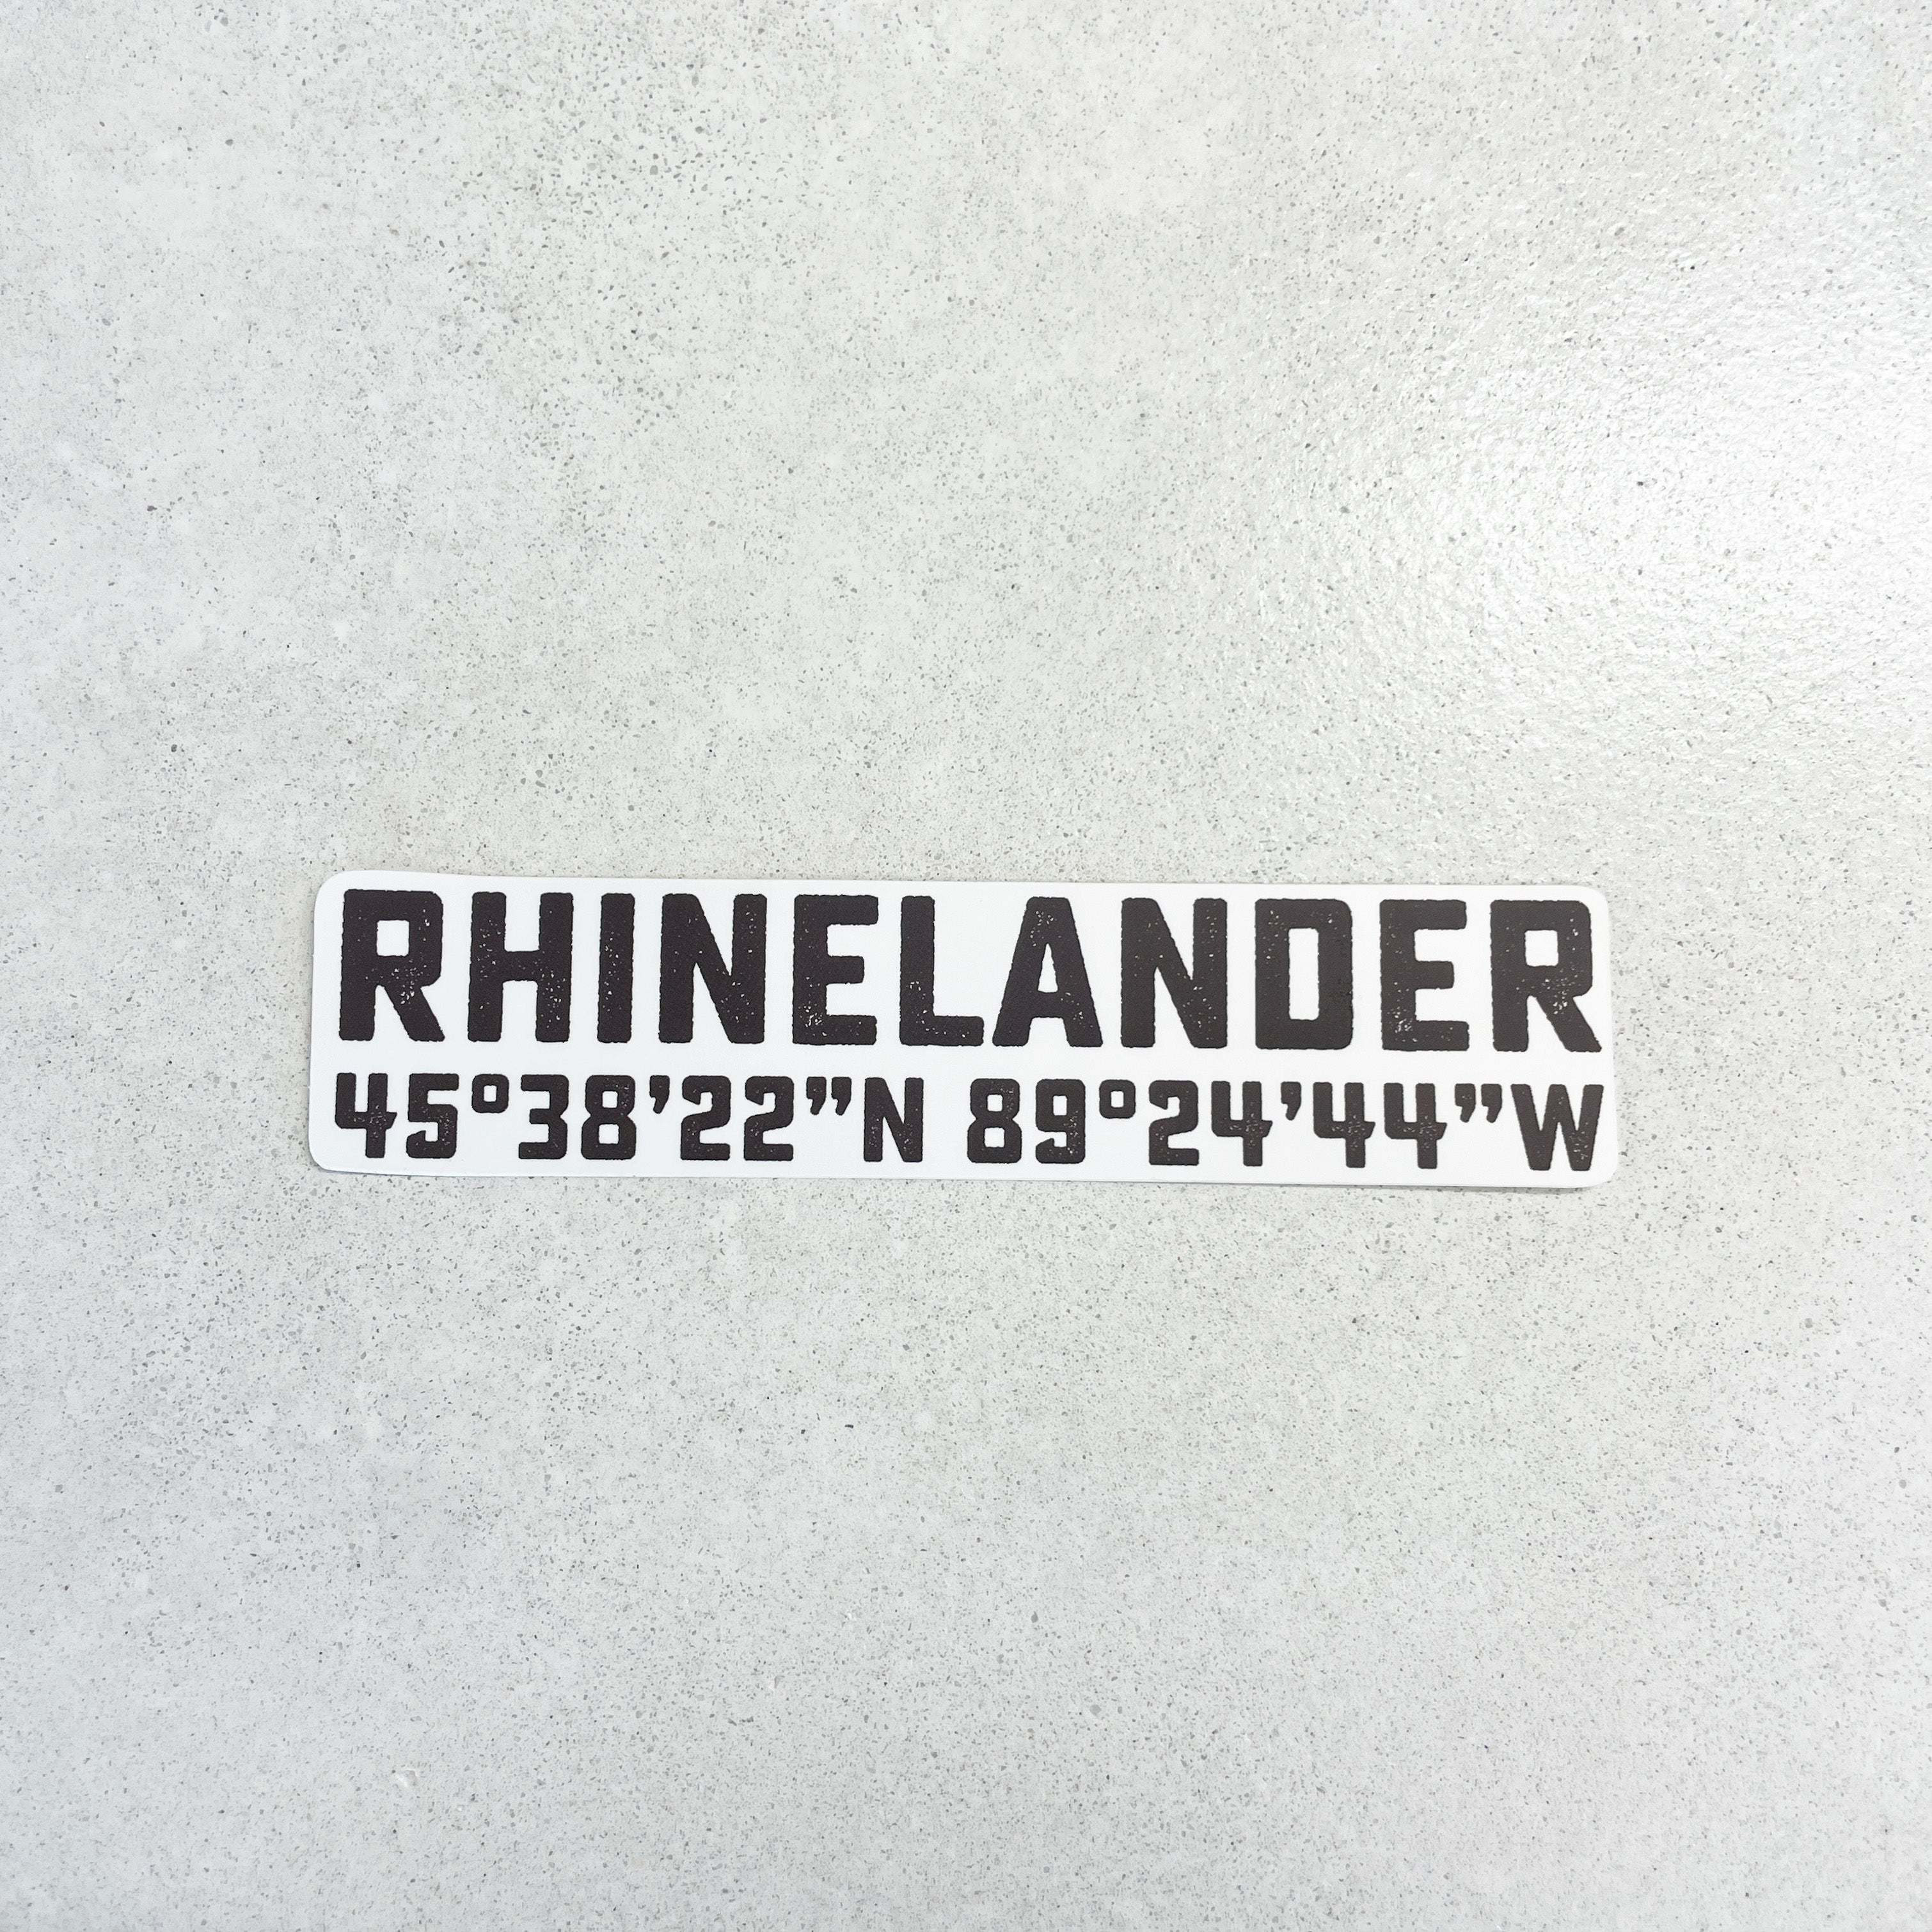 Rhinelander Latitude and Longitude Sticker